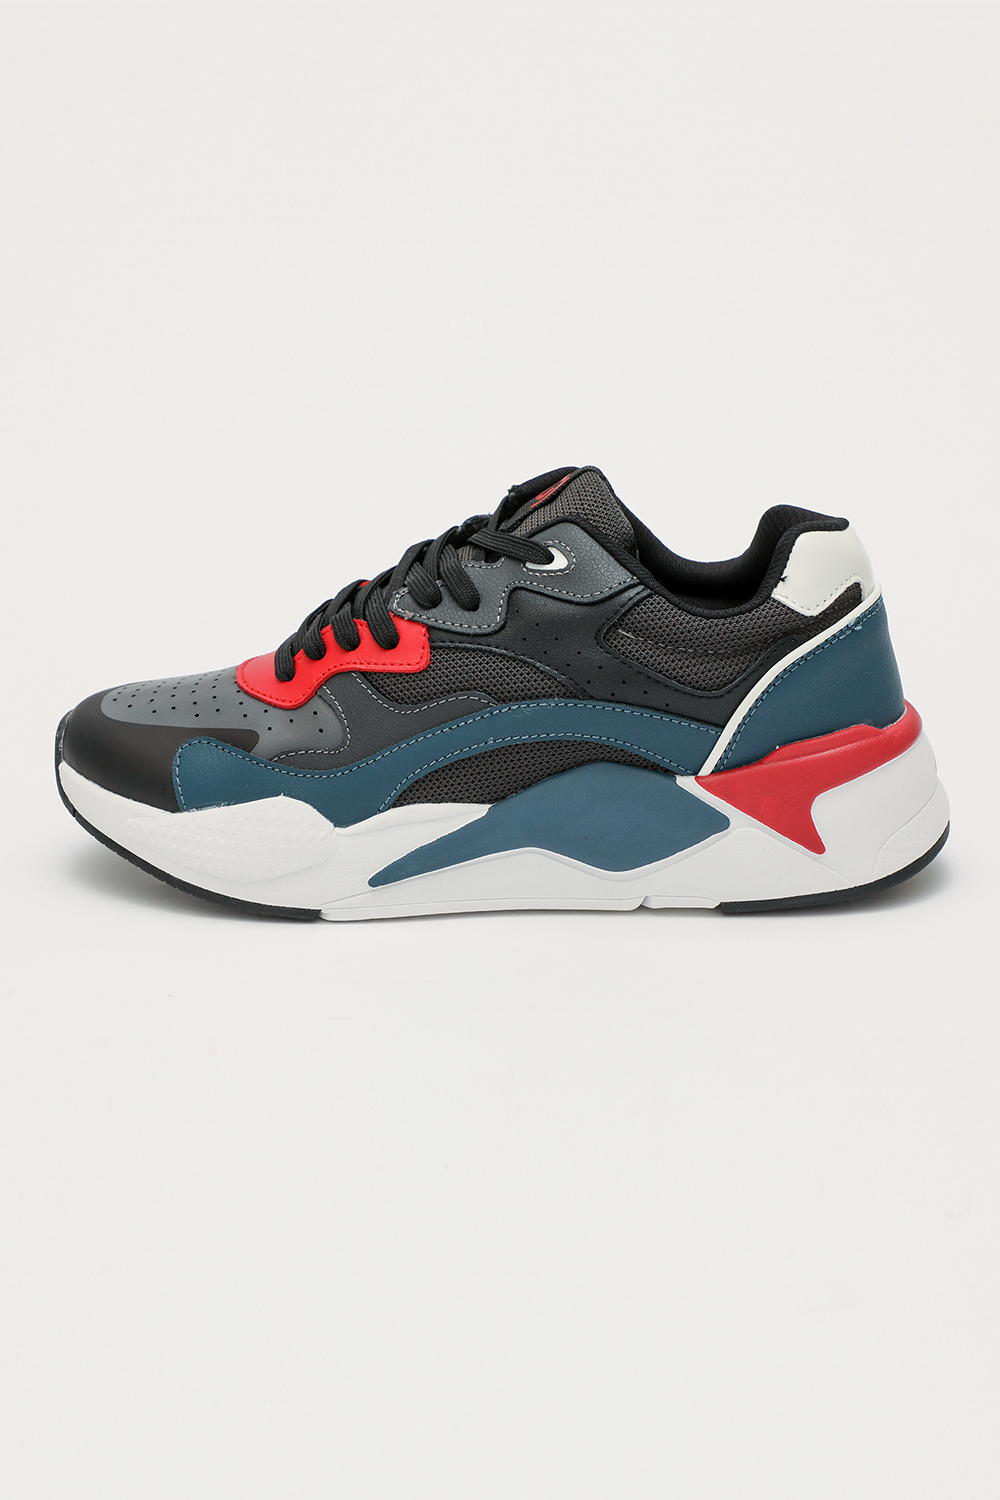 GAUDI - Ανδρικά sneakers GAUDI μαύρα κόκκινα μπλε Ανδρικά/Παπούτσια/Sneakers